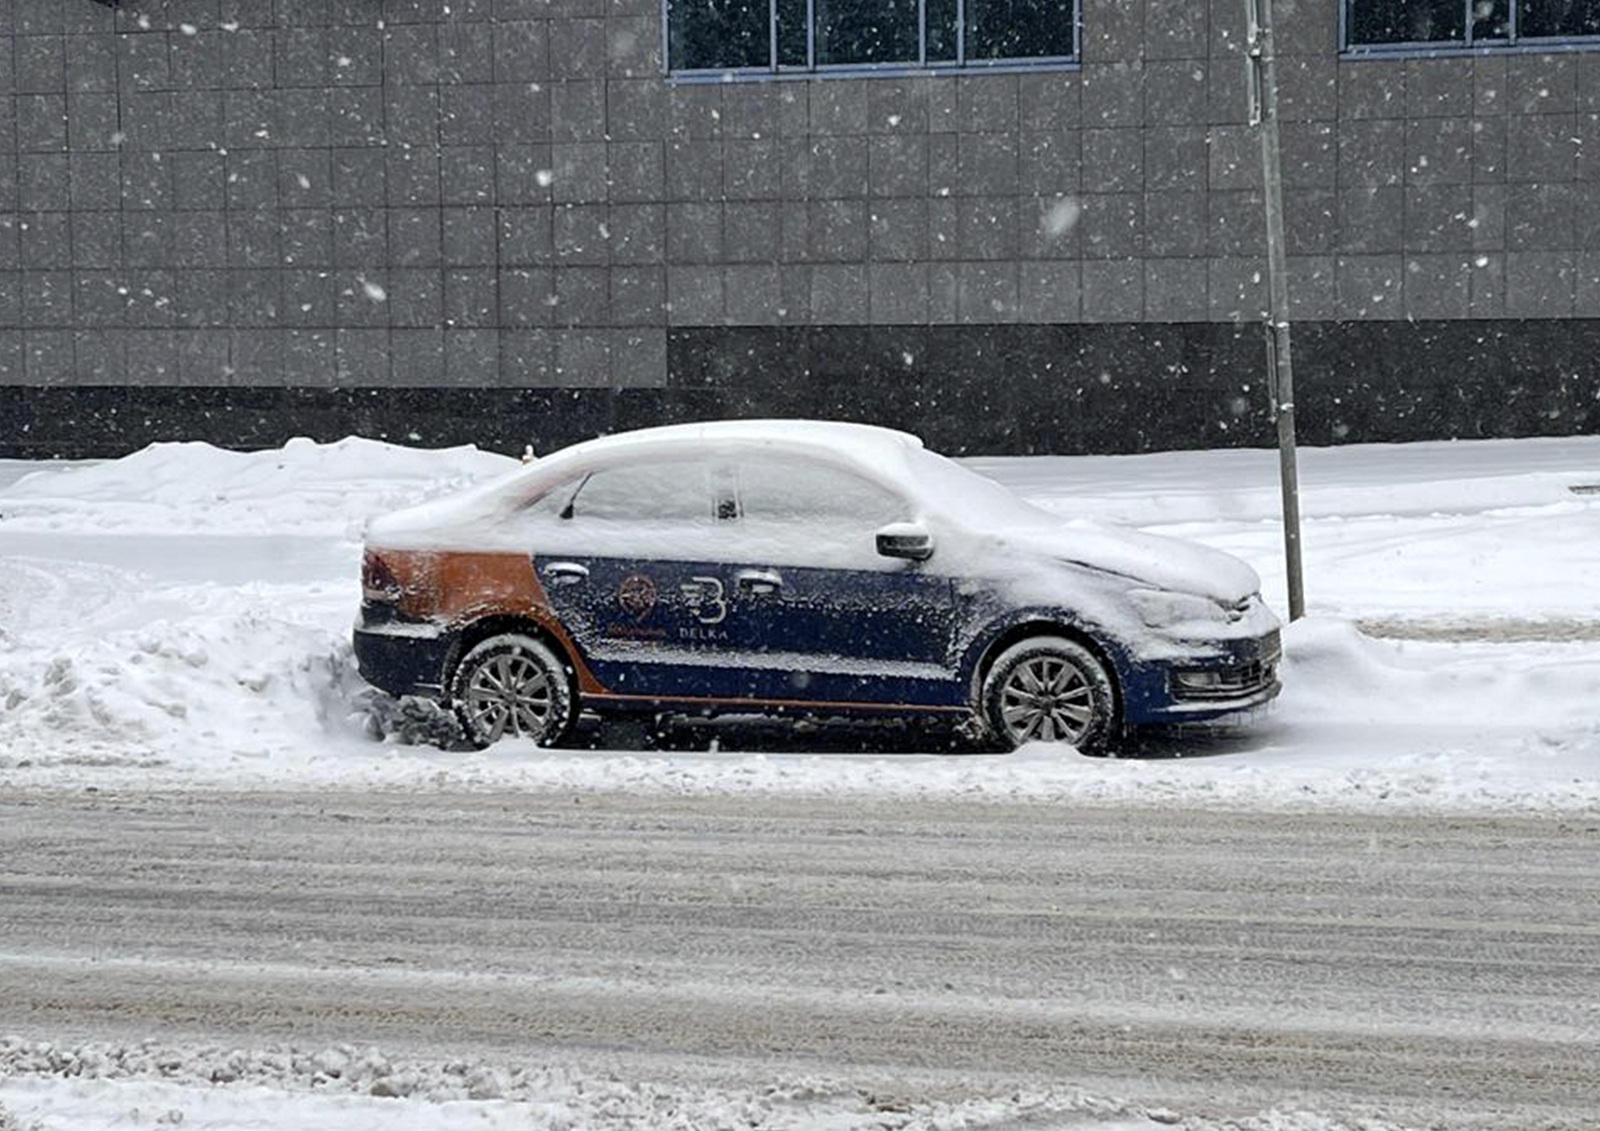 Метеоролог Тишковец сообщил о надвигающемся на Москву затяжном снегопаде